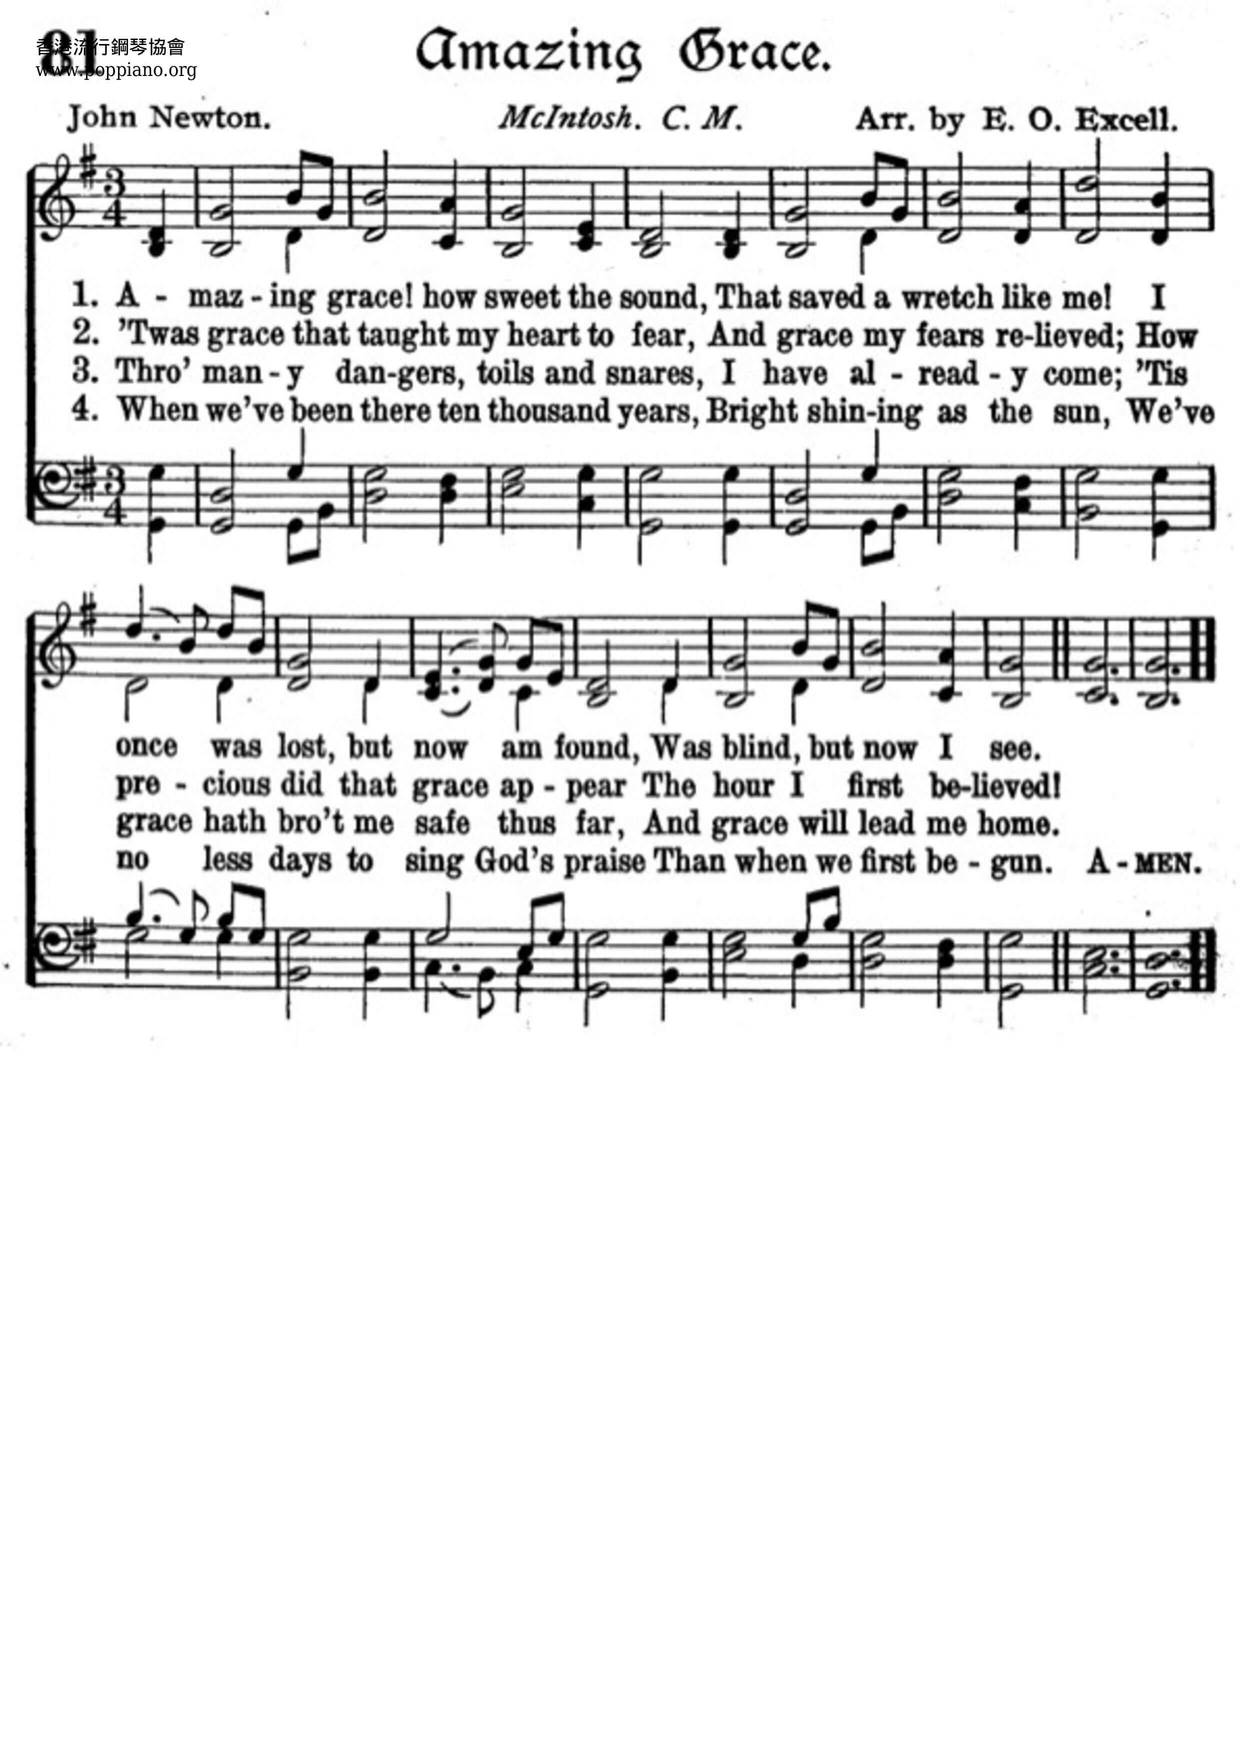 HymnAmazing Grace Sheet Music pdf, Free Score Download ★